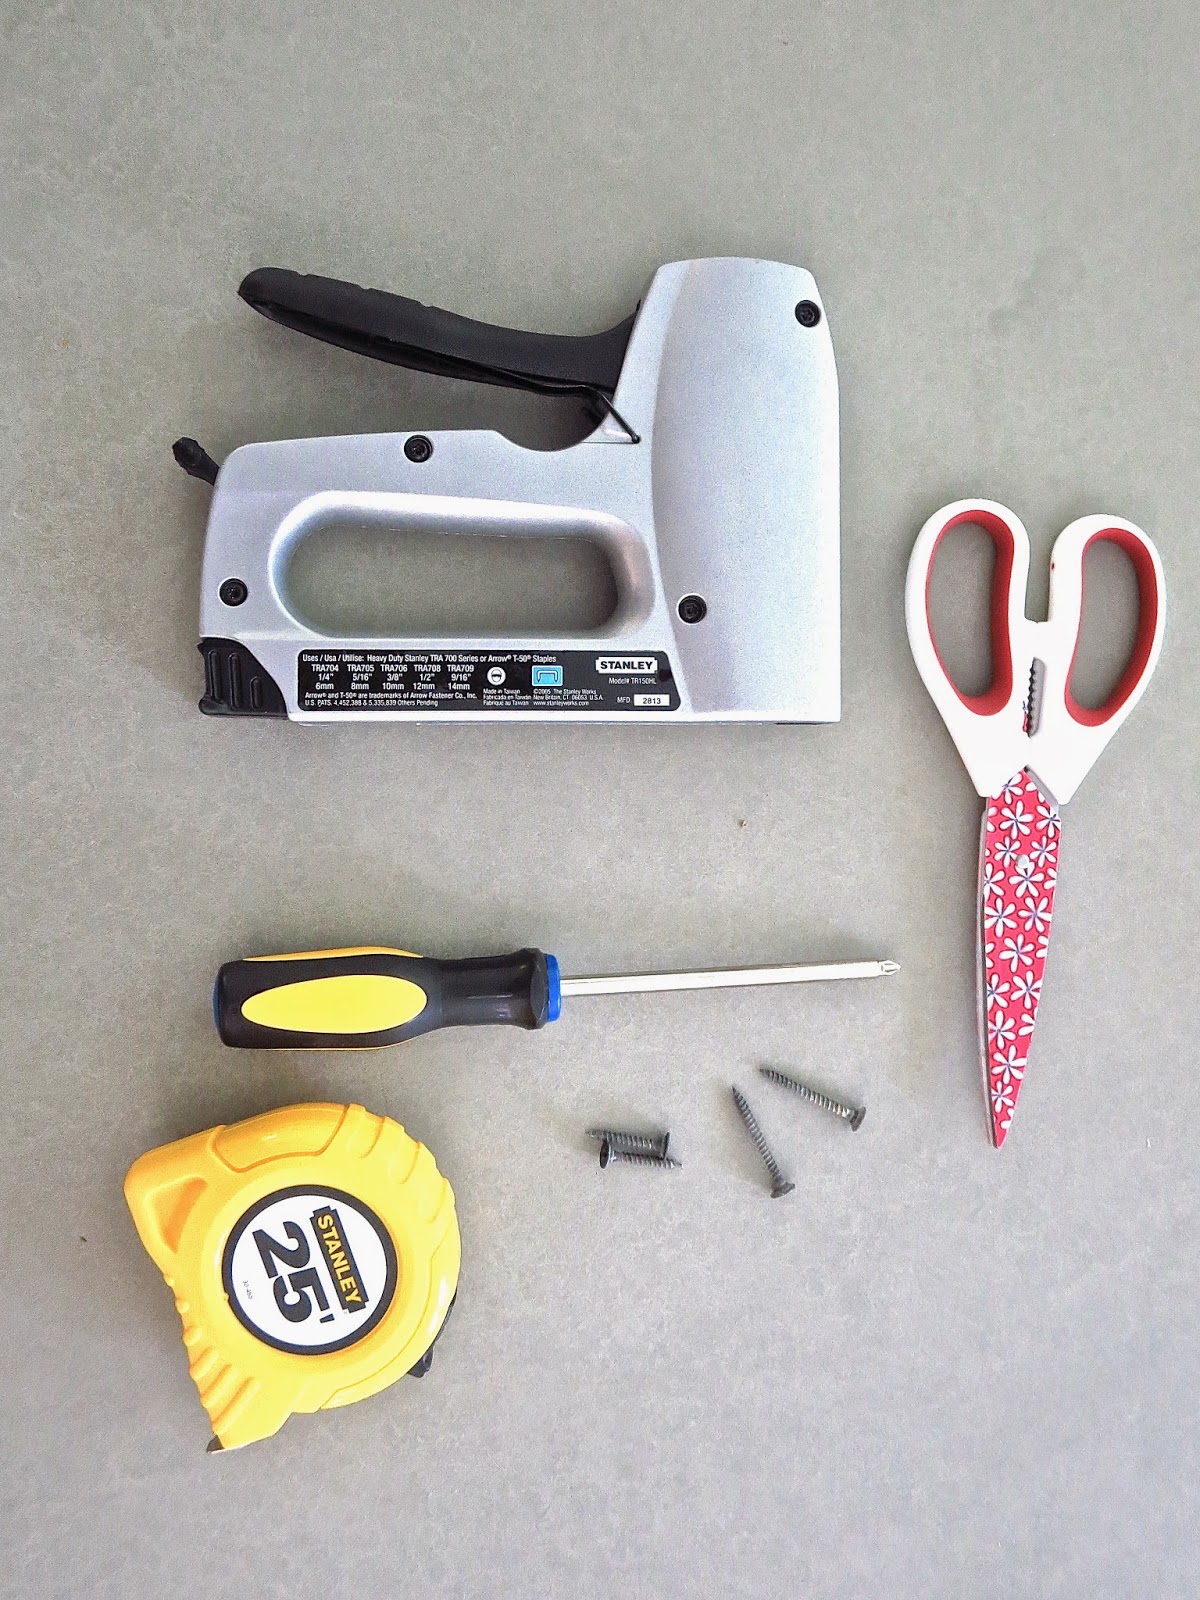 tools staple gun scissors screw driver measuring tape